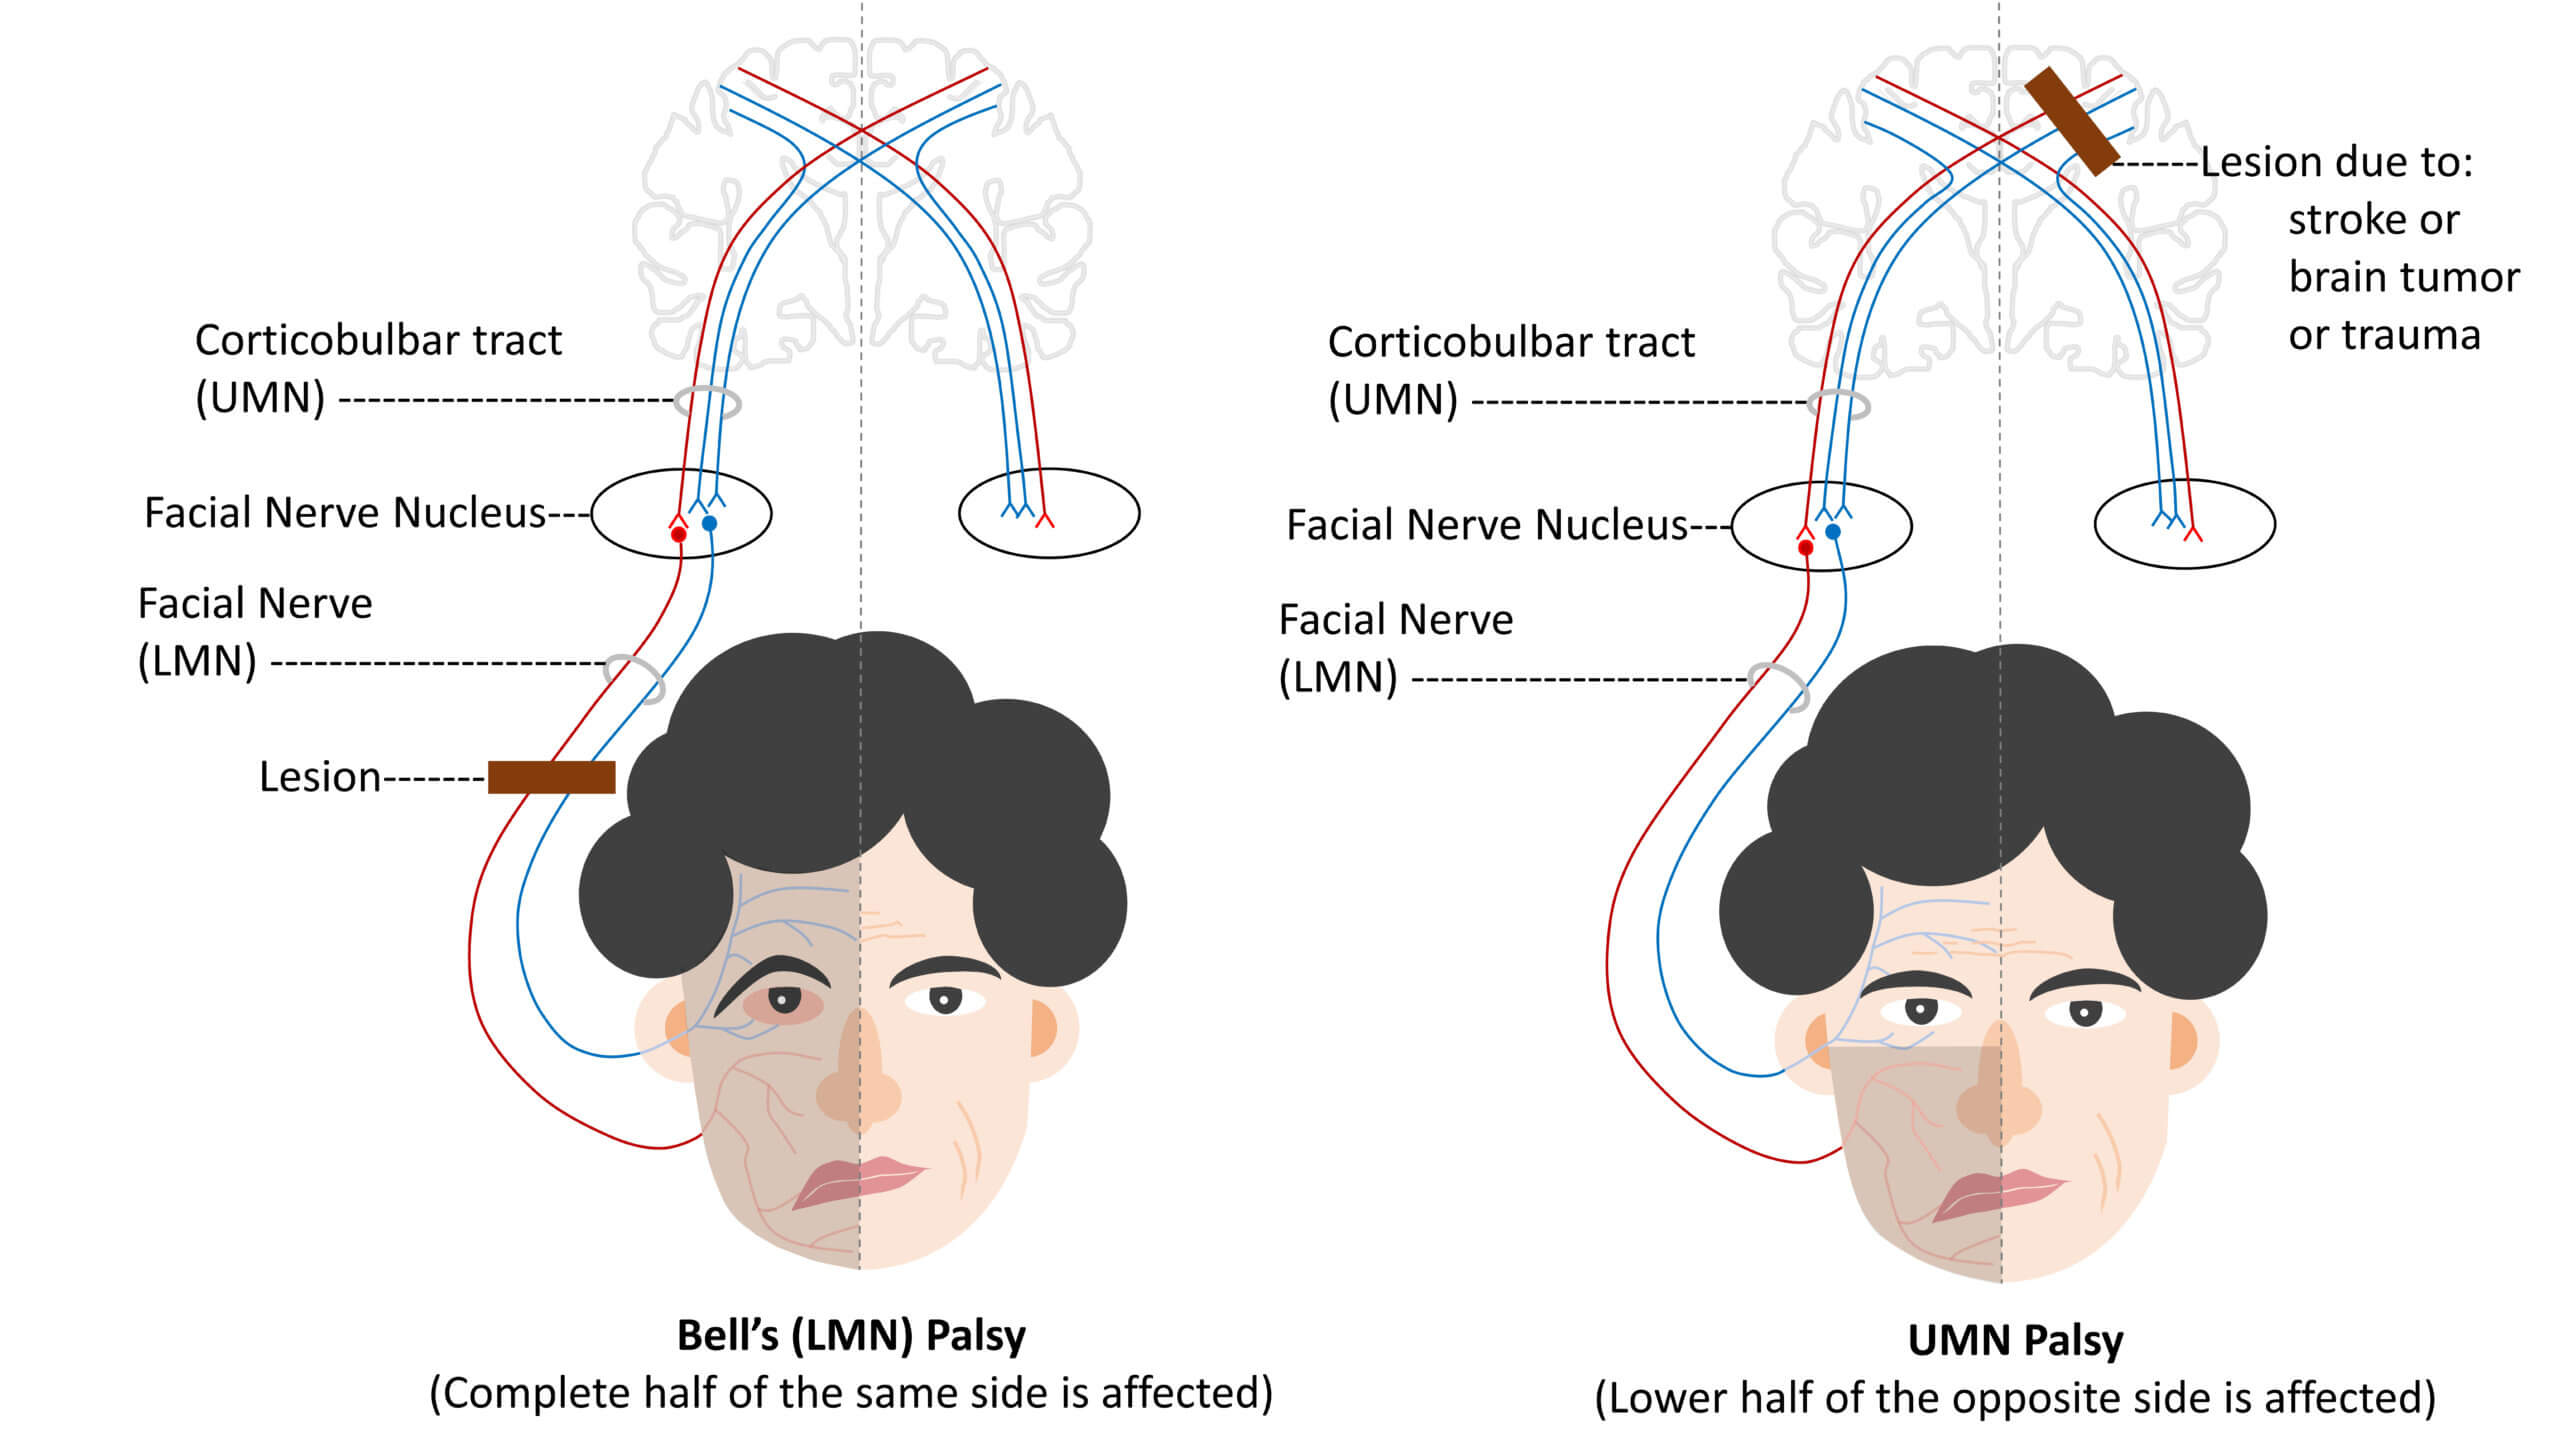 Facial nerve Palsy (LMN Type)